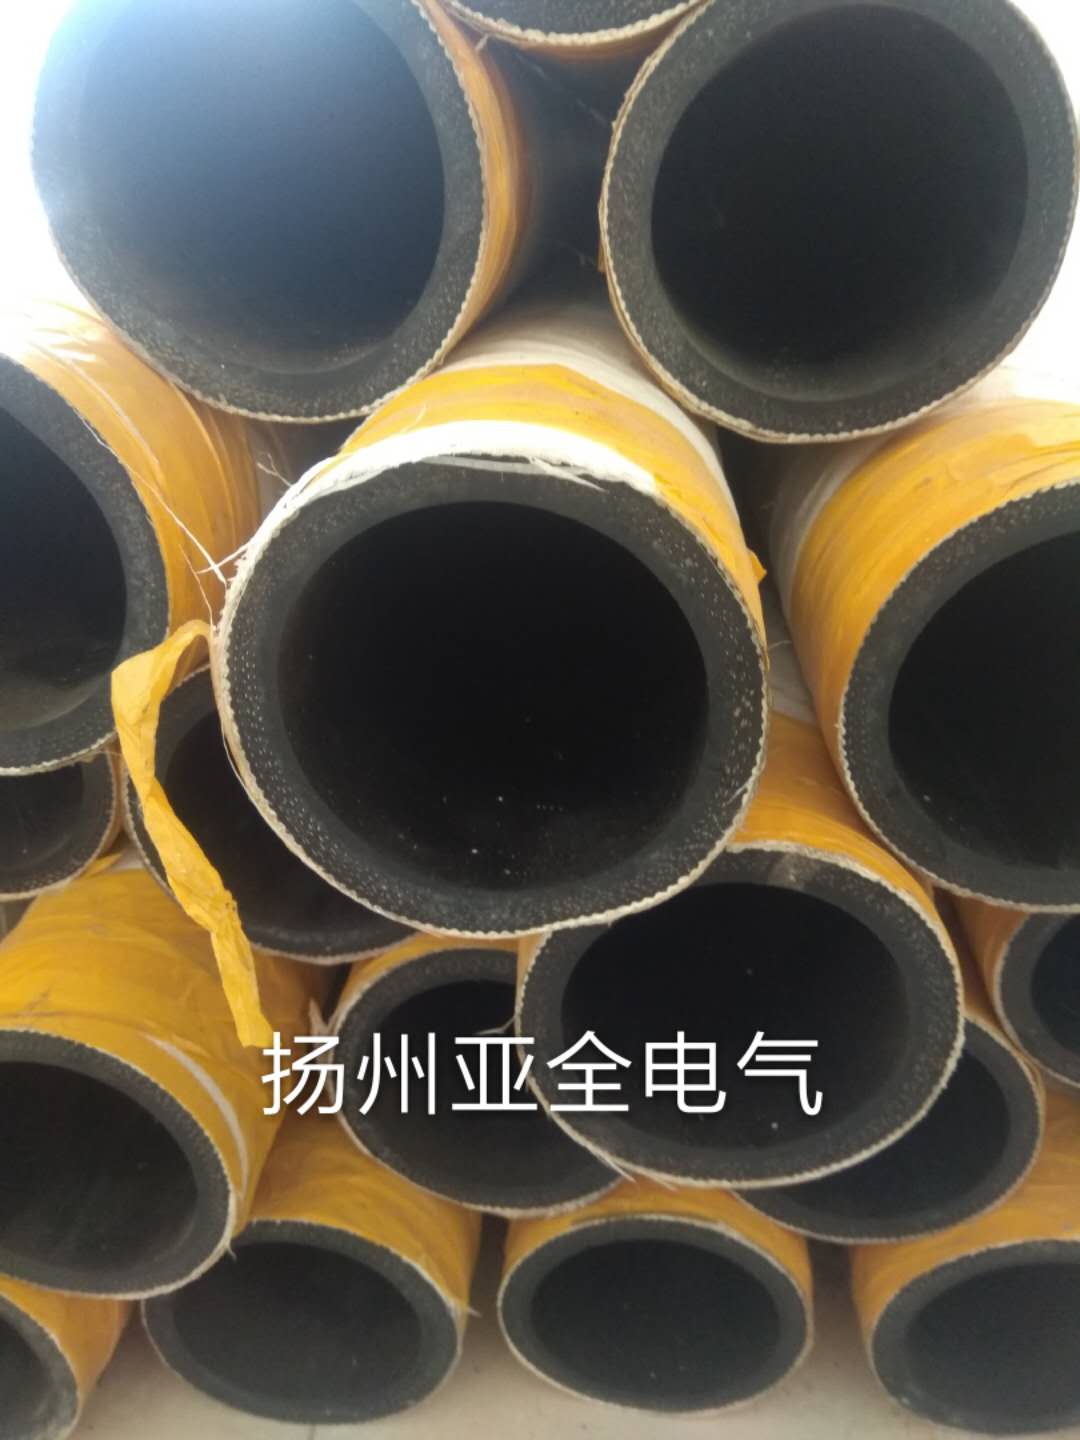 扬州市水冷电缆套管。石棉胶管厂家水冷电缆套管。石棉胶管